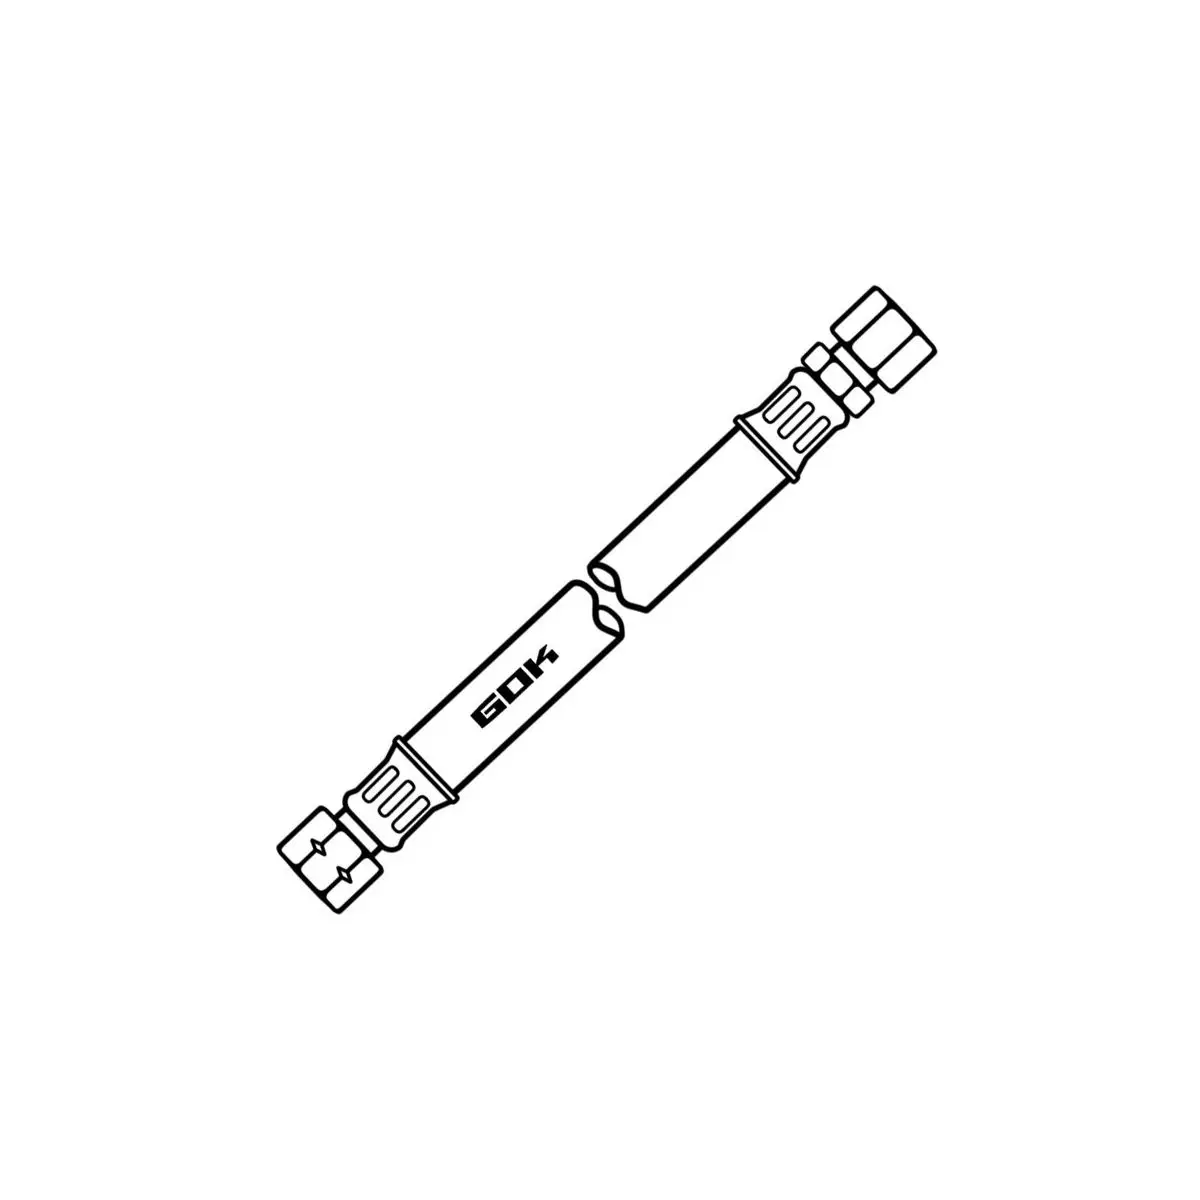 Strednotlakové hadicové vedenie - G 1/4 LH-M x RVS 8 x 400, voľné